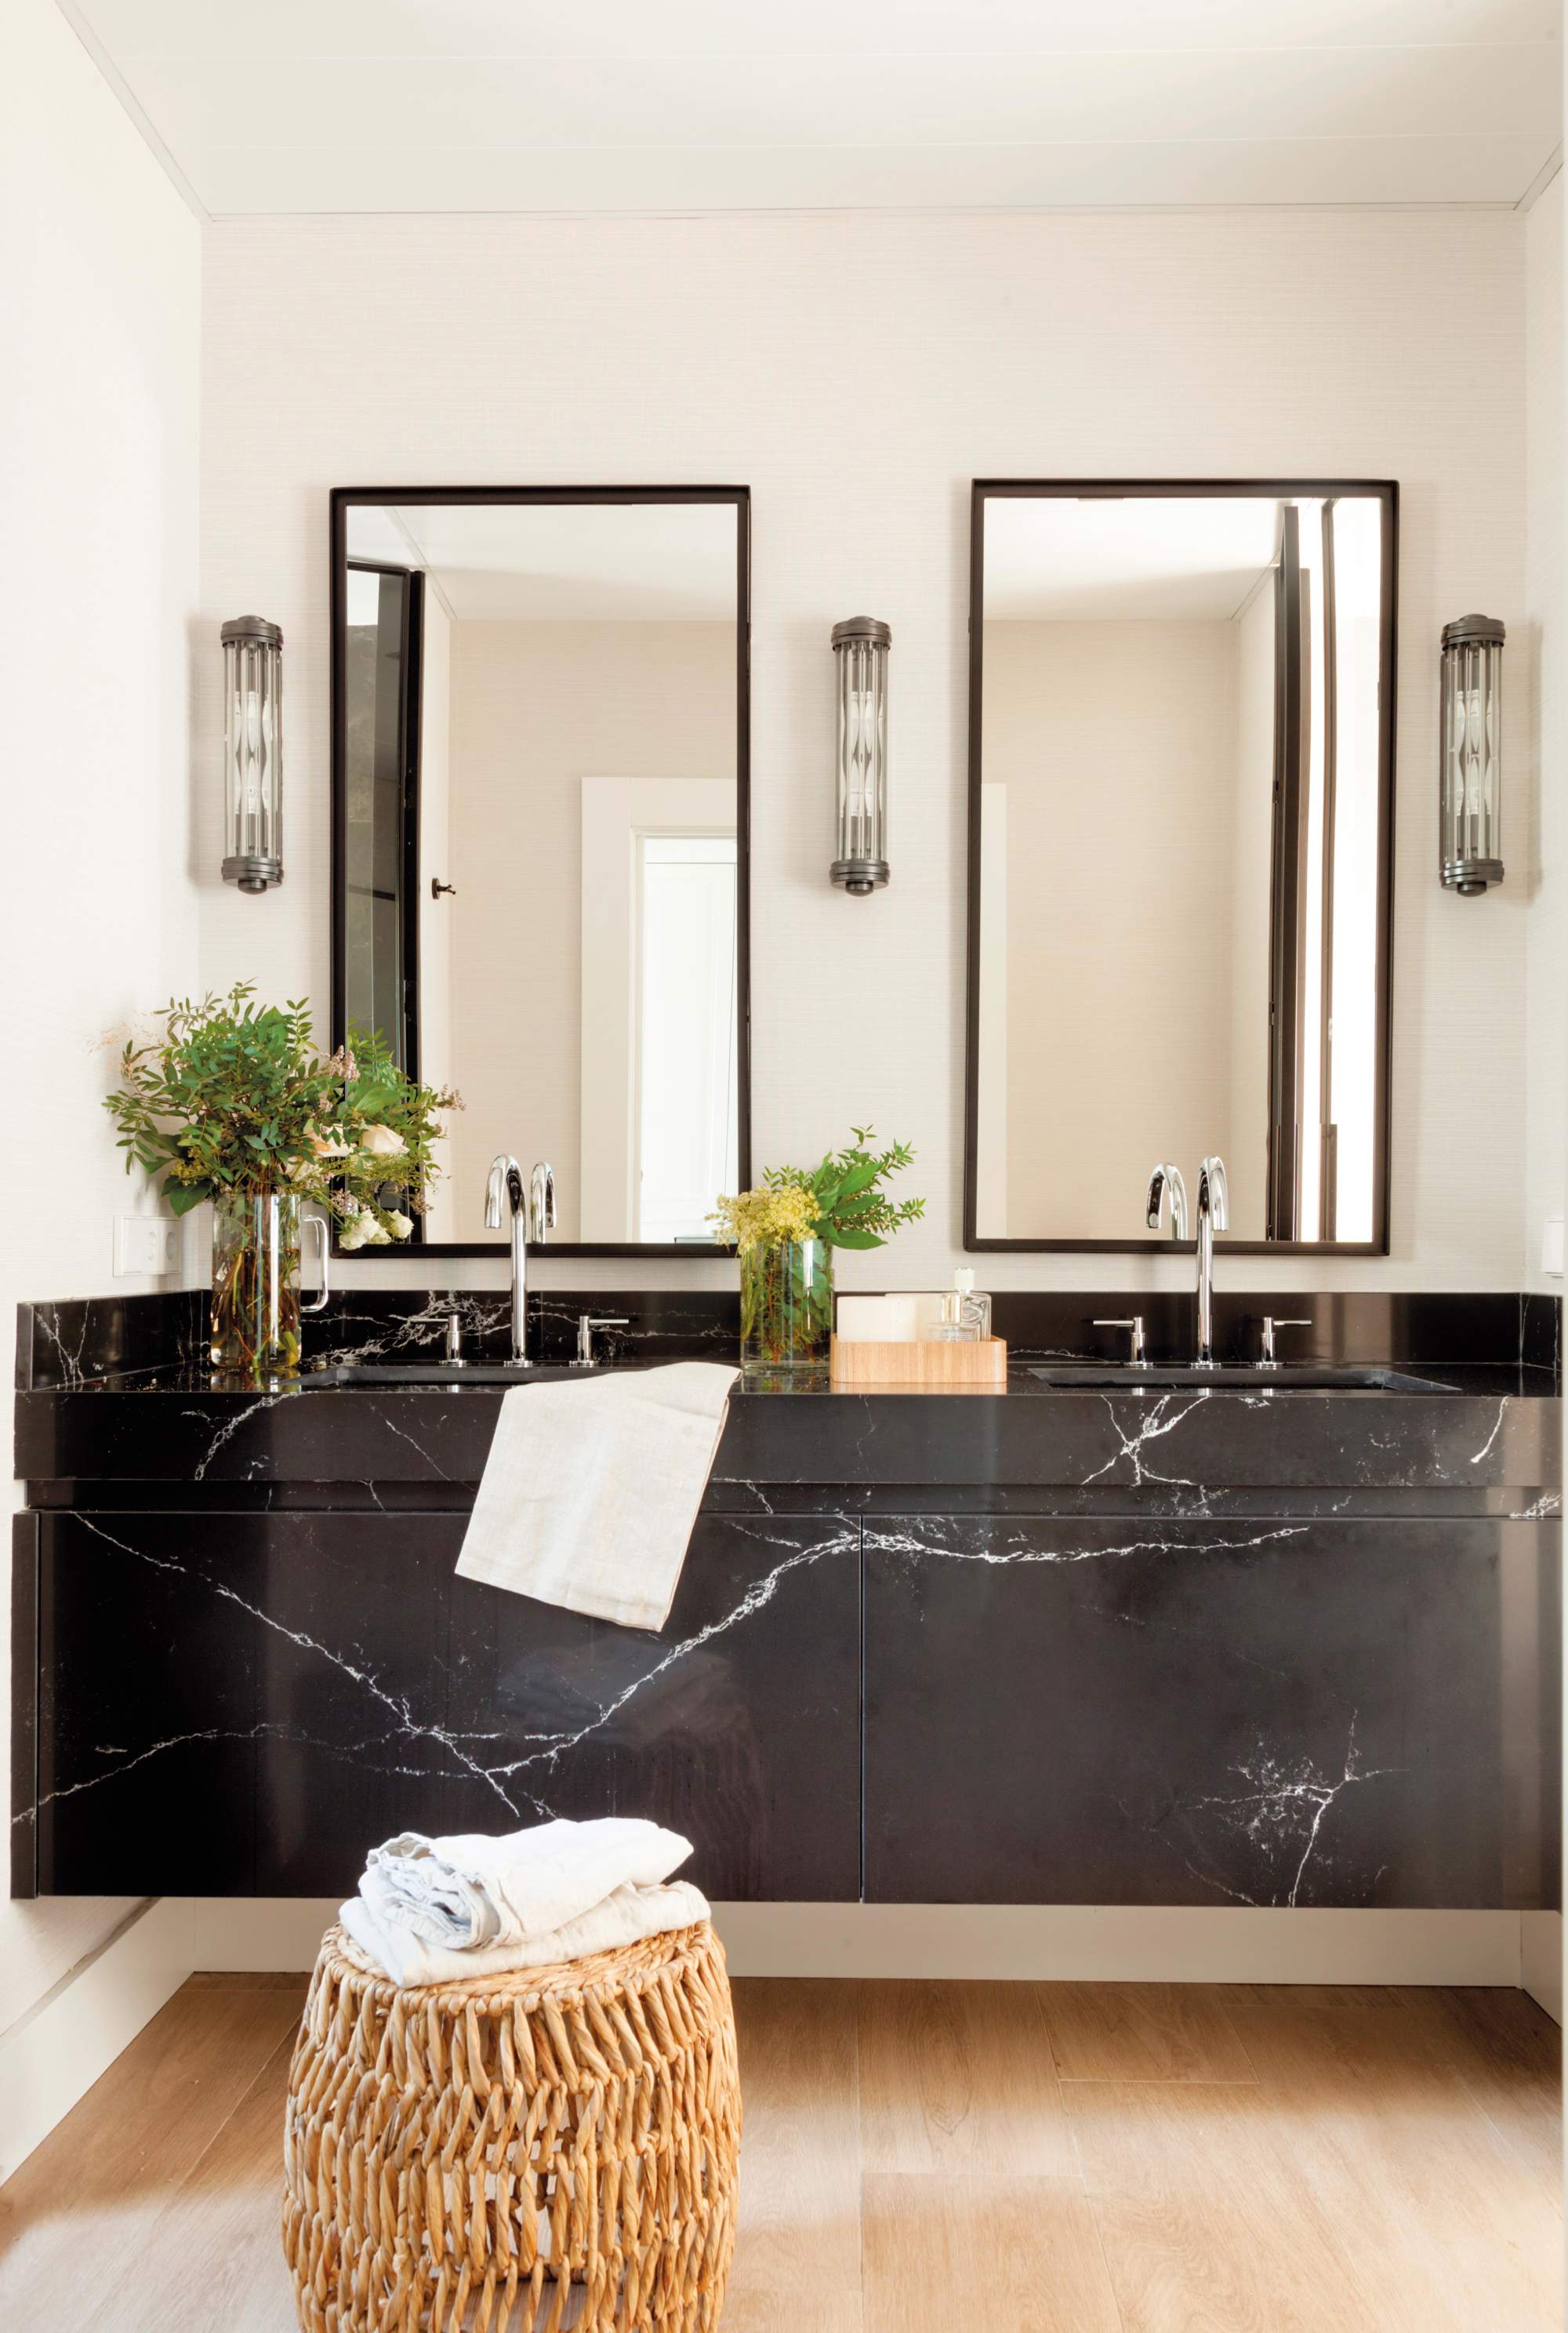 Baño con mueble de mármol negro con espejos y apliques